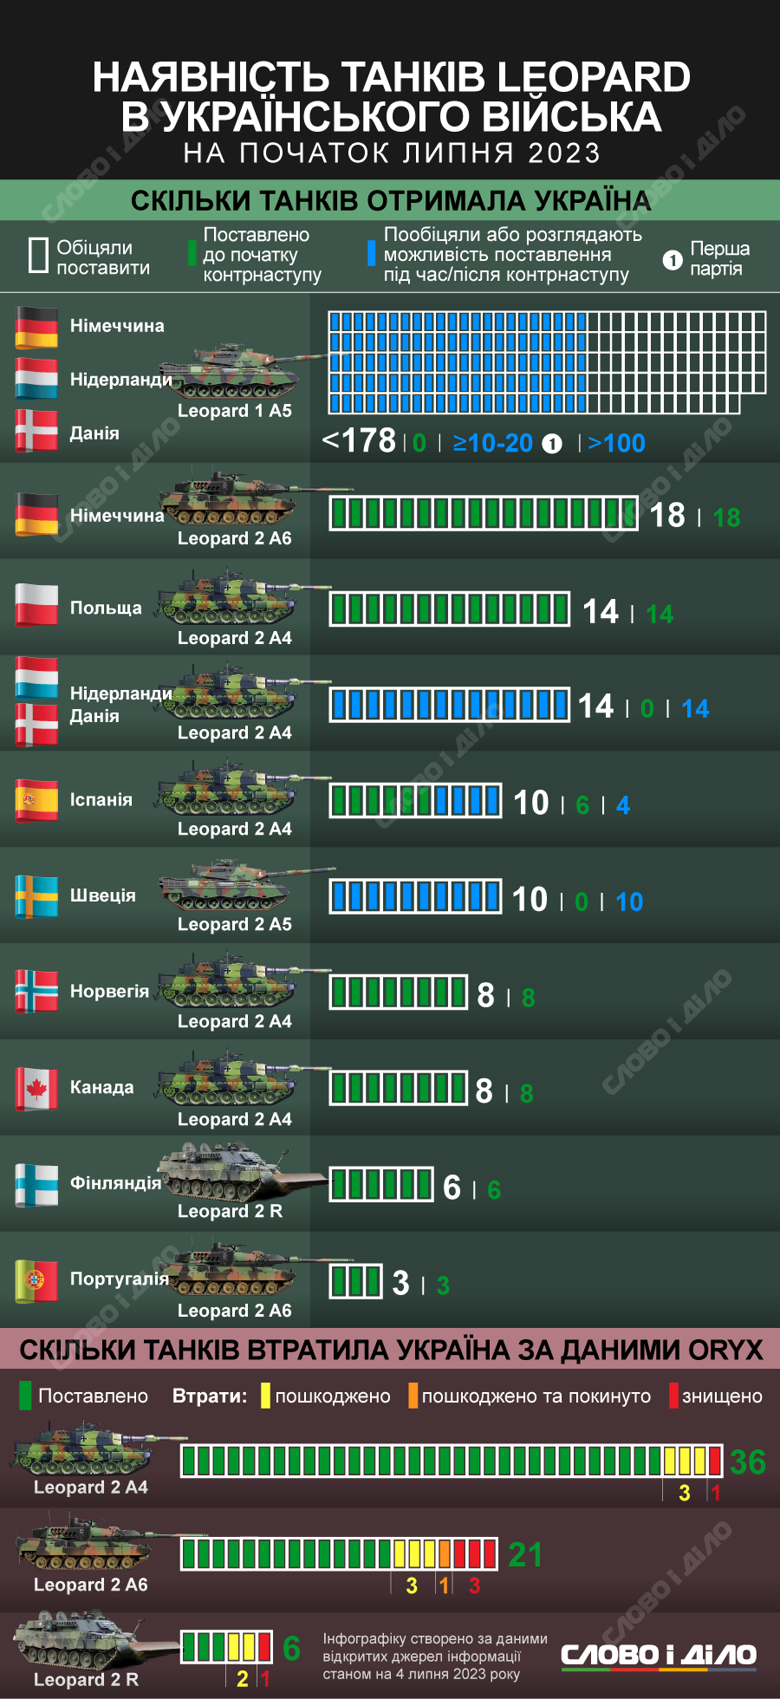 Сколько немецких танков Leopard союзники пообещали Украине, сколько передали к контрнаступлению и сколько уже могло быть уничтожено в боях – на инфографике.